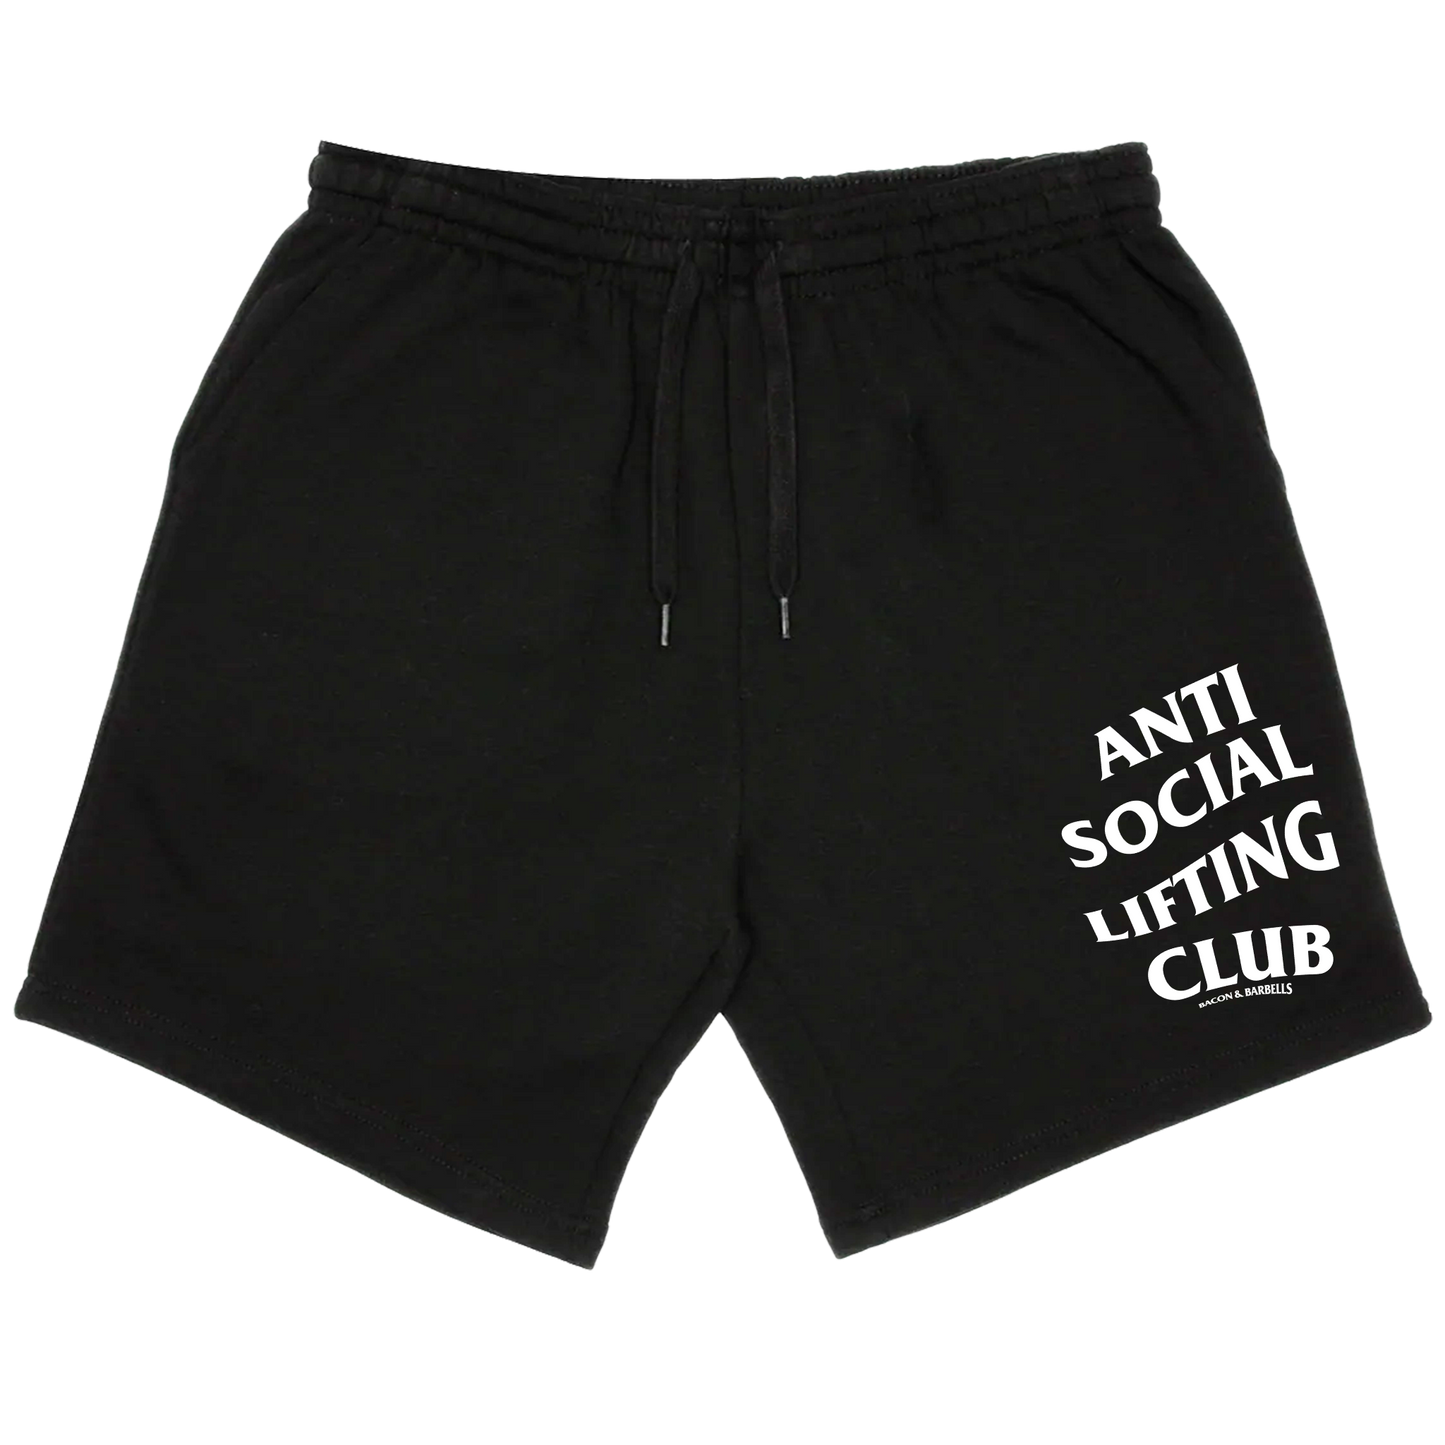 ANTI SOCIAL LIFTING CLUB Shorts (Black/White)